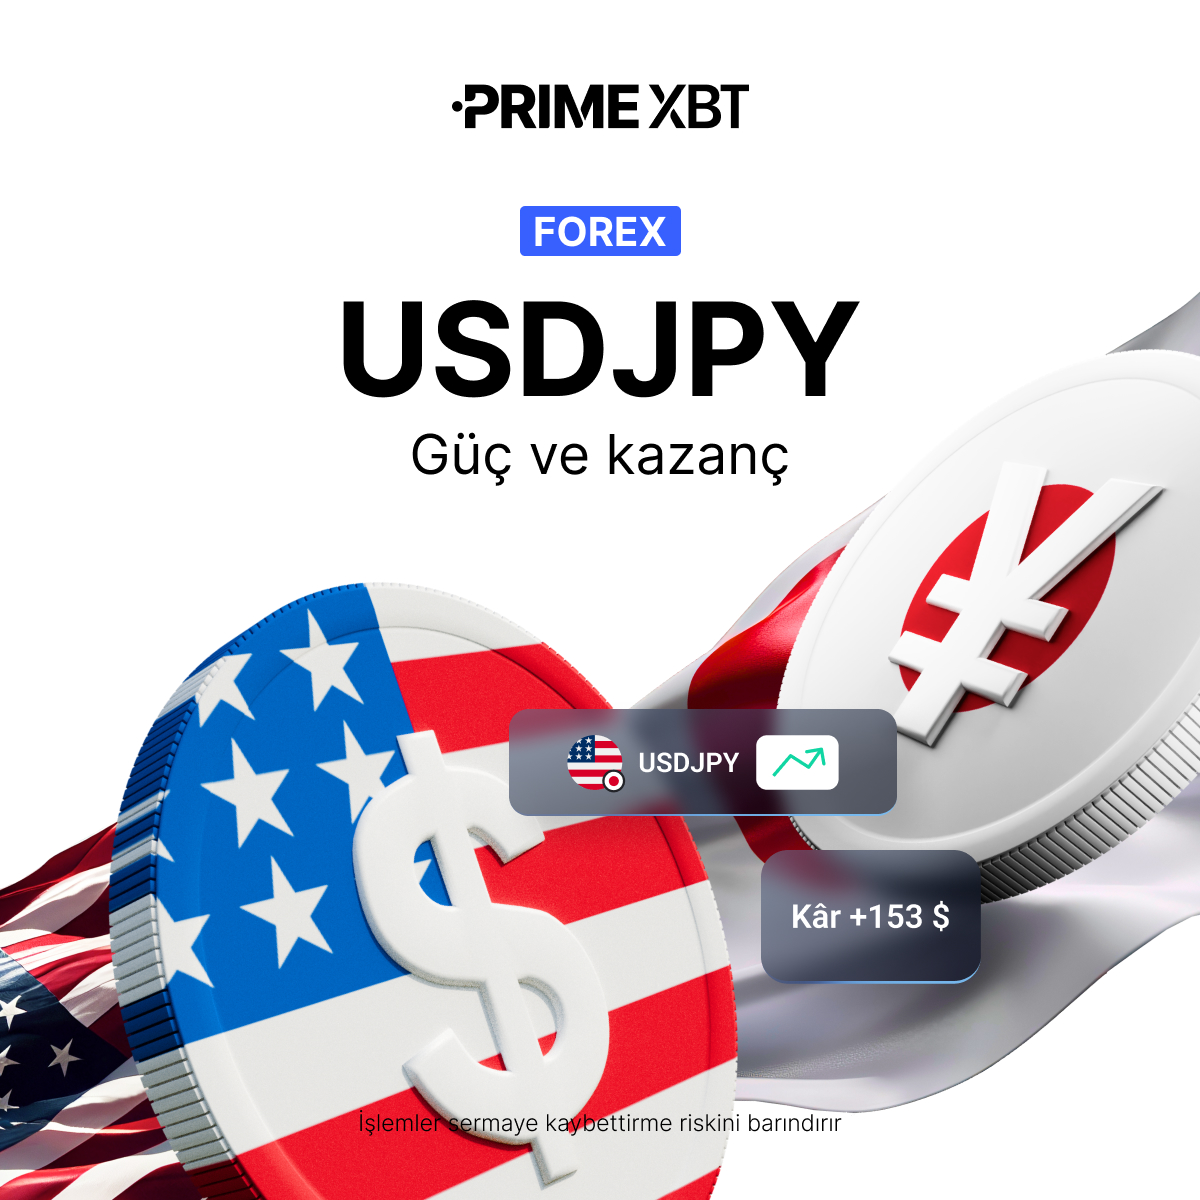 🇺🇸🇯🇵 #USD/JPY fiyatlandırması, bu dinamik çifti şekillendiren ekonomi politikalarını ve küresel olayları yansıtıyor. 

İşlem stratejinizi #forex çiftleri ile çeşitlendirdiniz mi?

✅ Buradan işlemlerinize başlayın: bit.ly/4dBITPd

#PrimeXBT #İşlemler